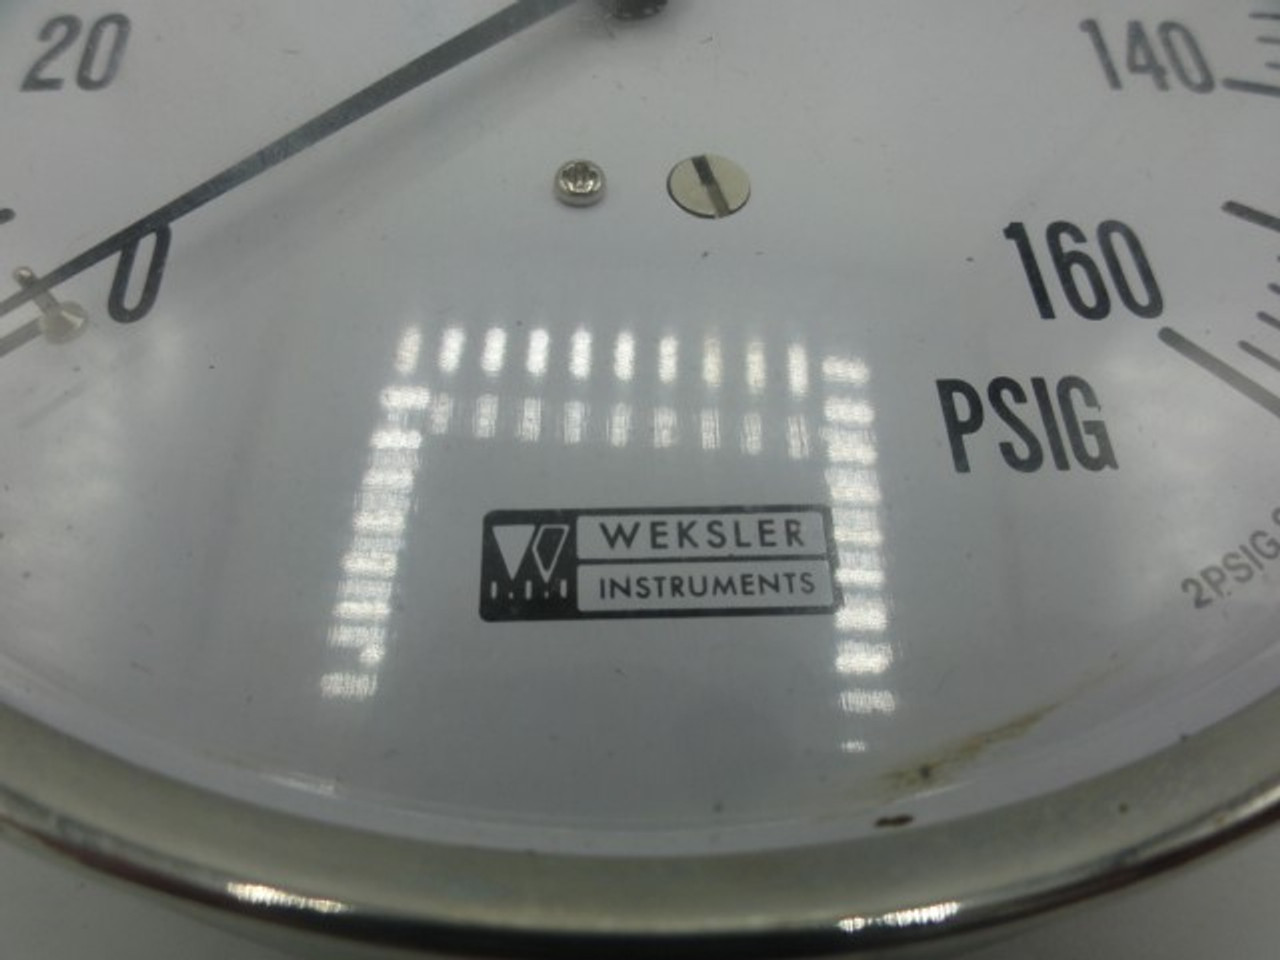 Weskler Instruments 160 PSIG Pressure Gauge